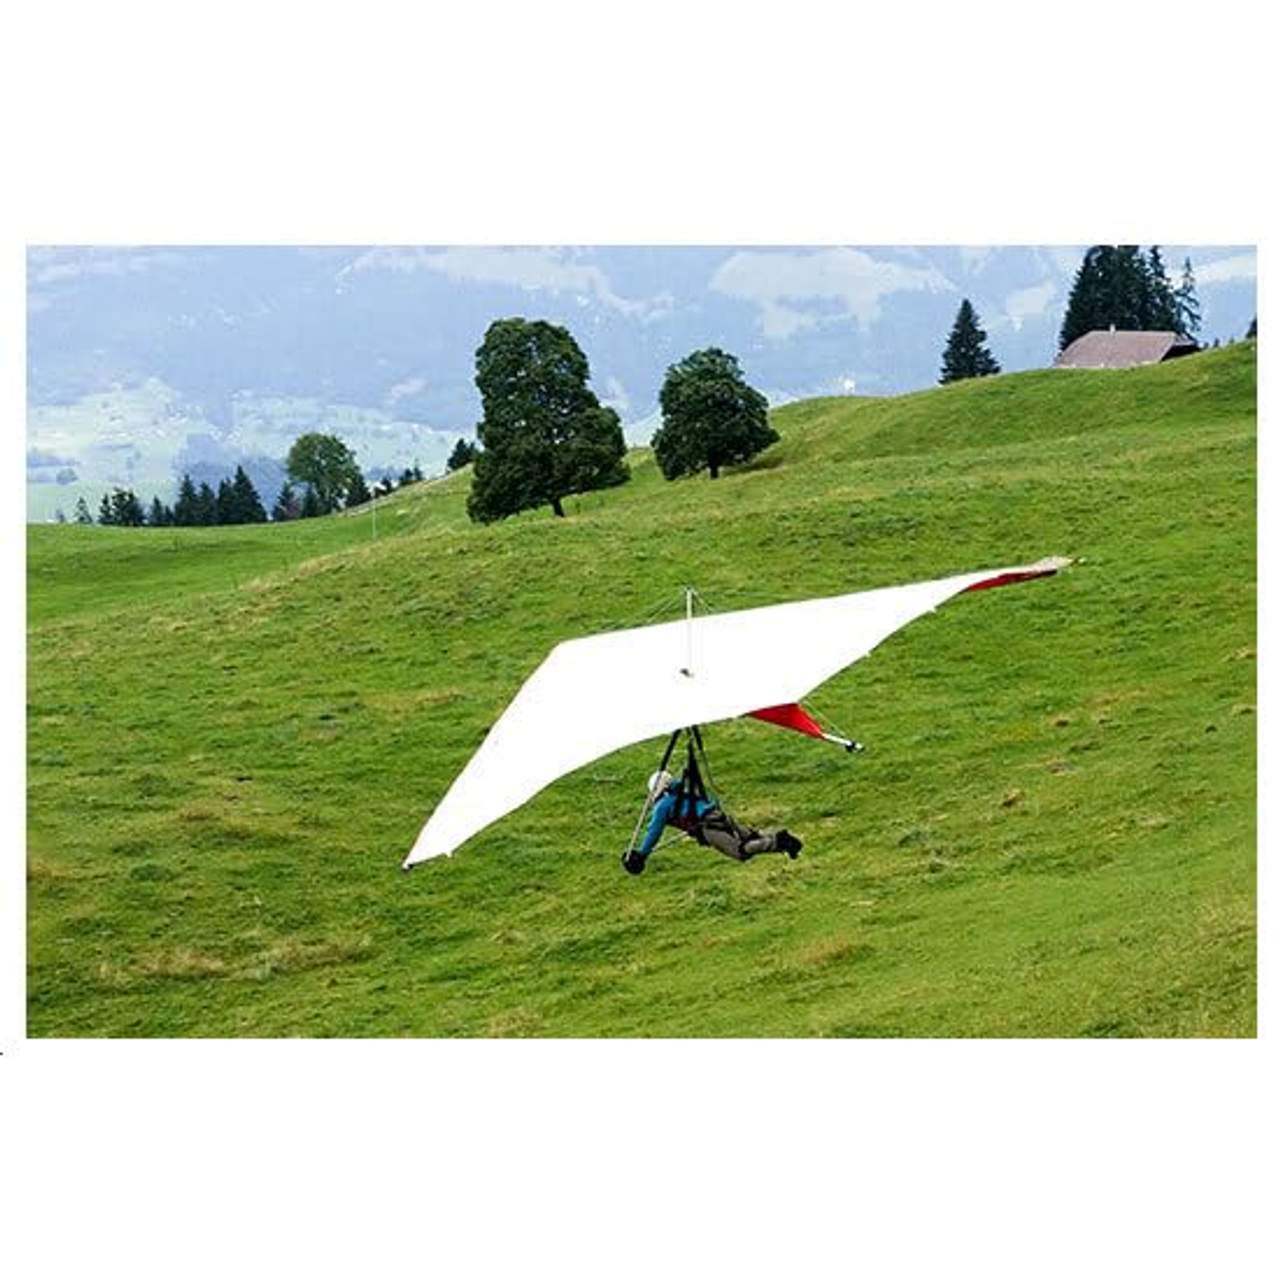 JOCHEN SCHWEIZER Geschenkgutschein: Drachen-Fliegen Schnuppertag Schweiz